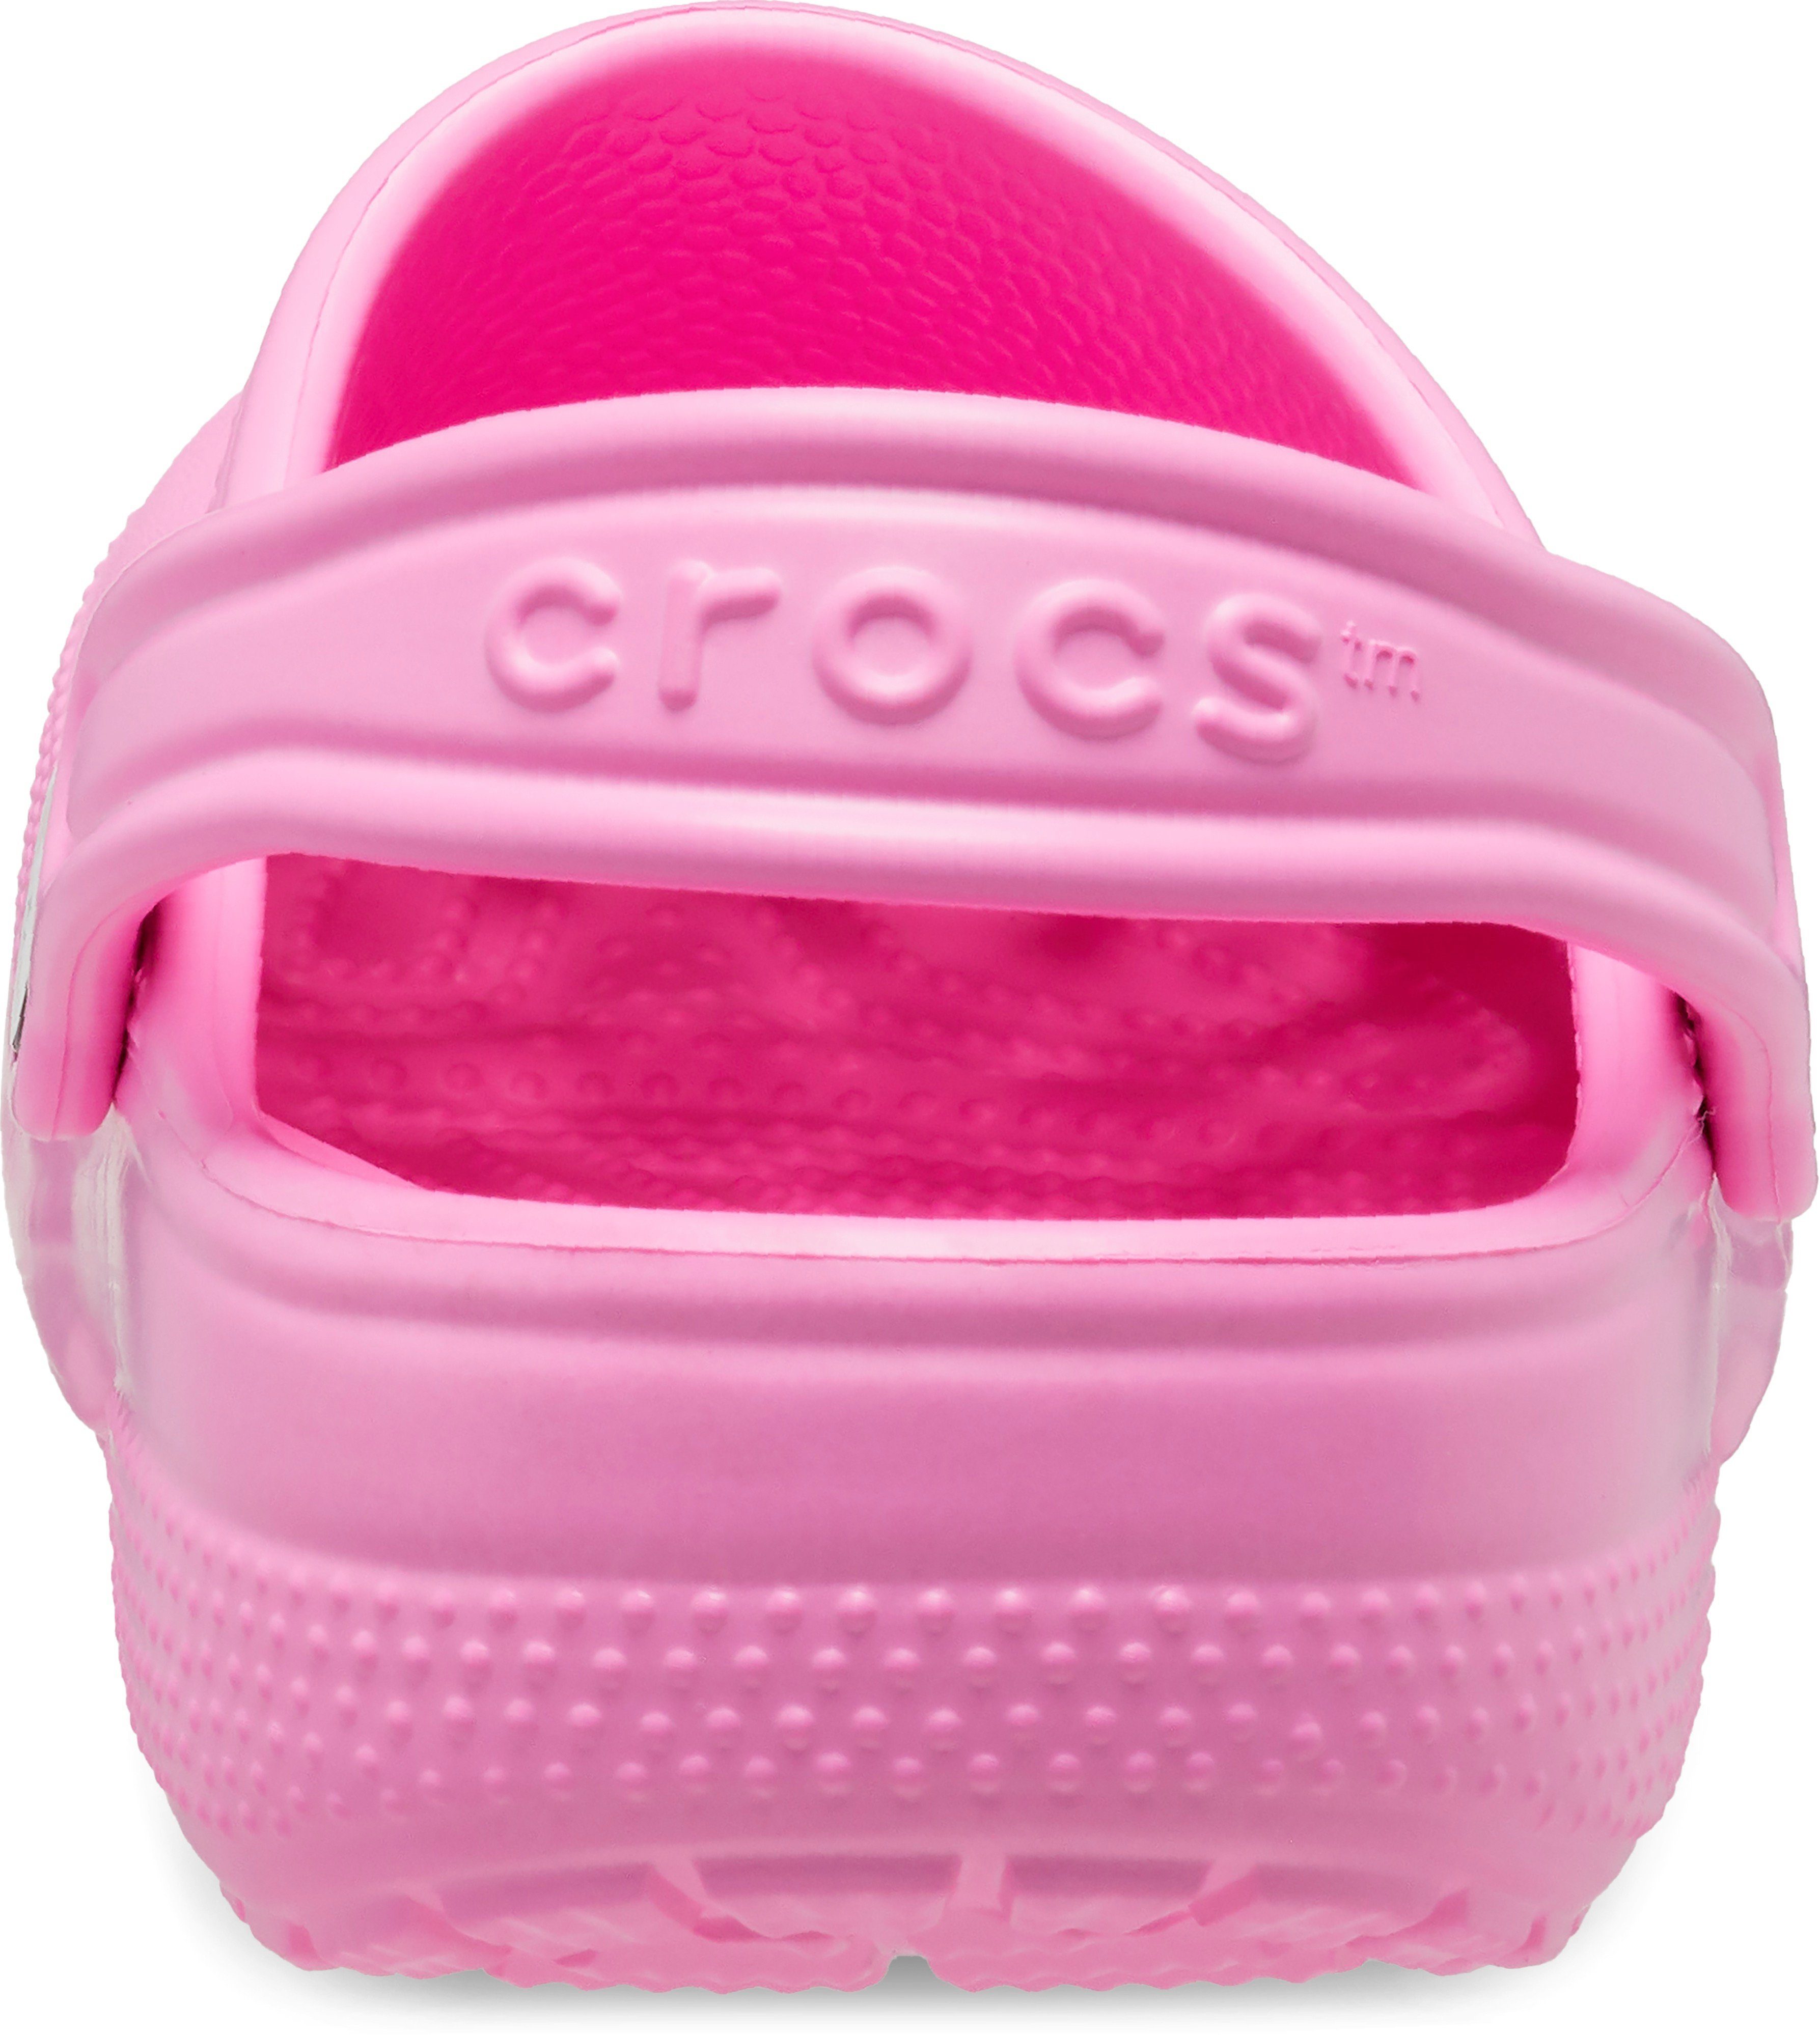 Crocs pink Classic Clog Clog K